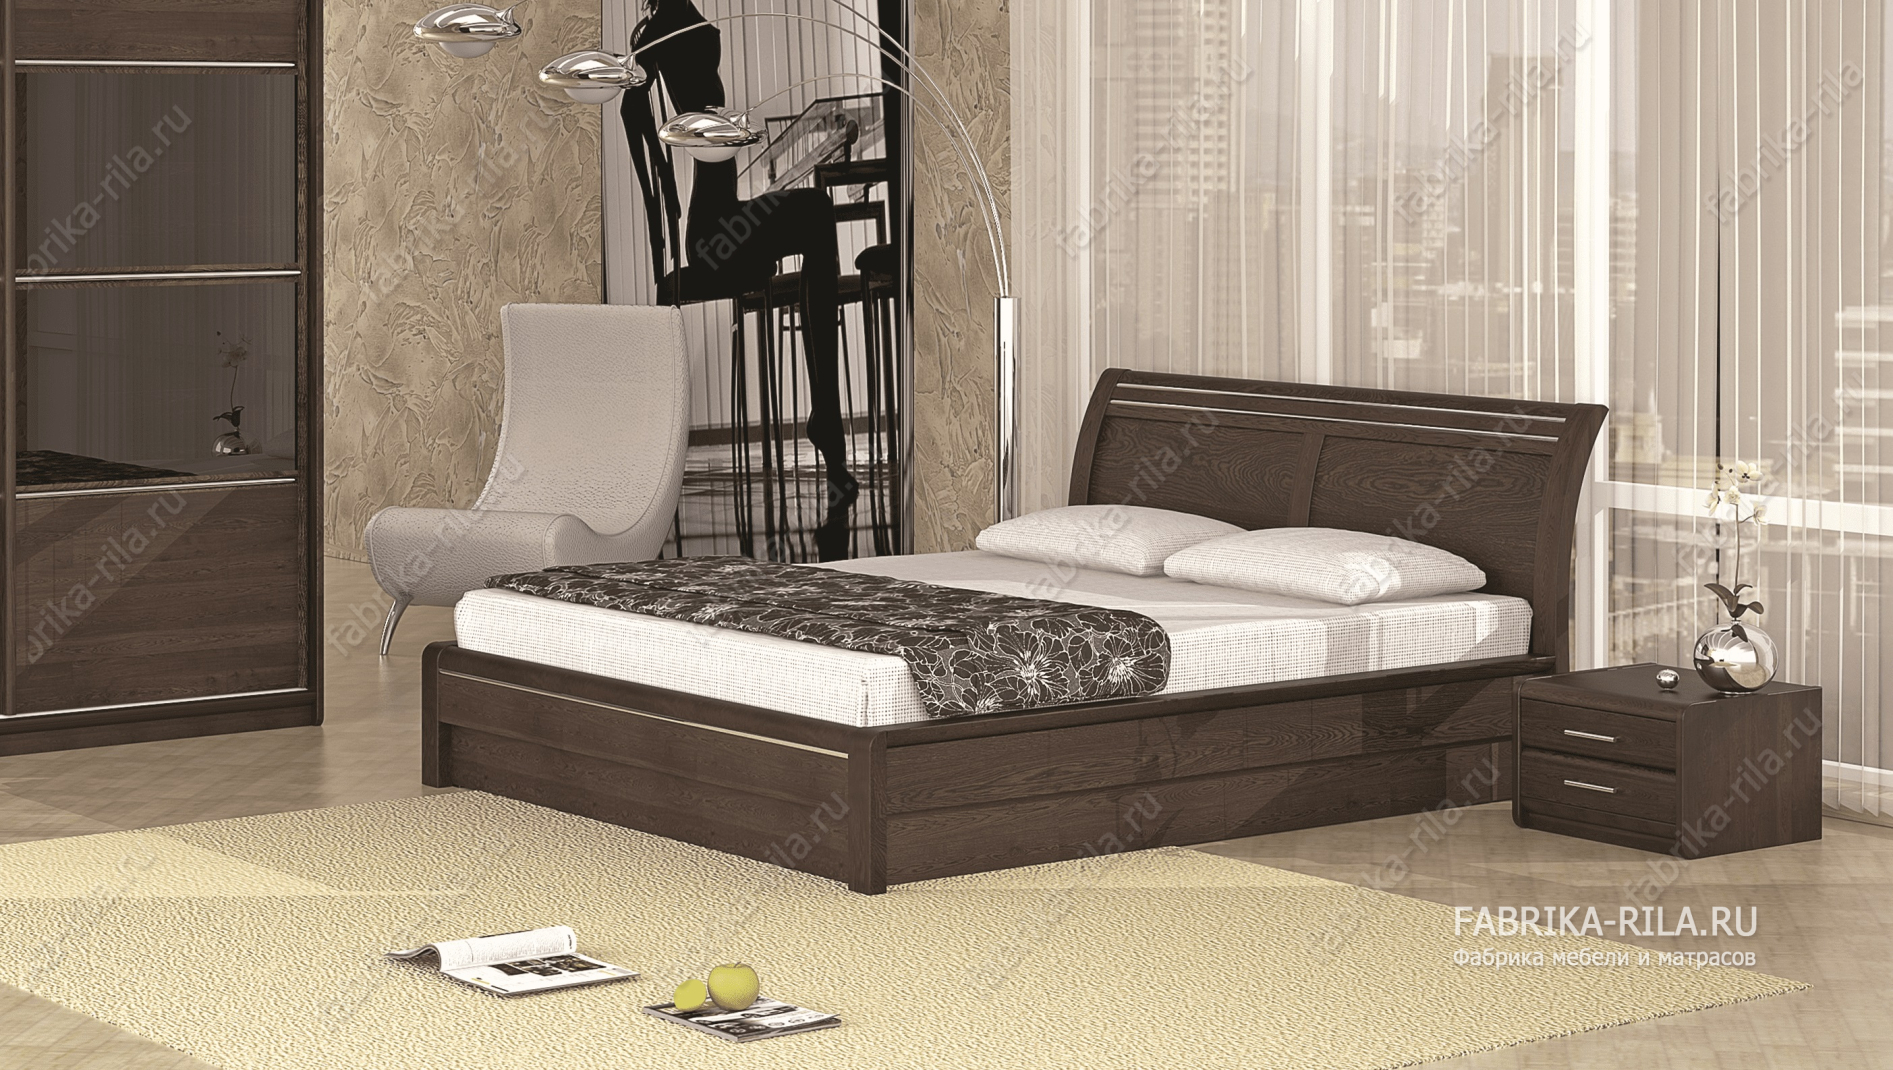 Кровать Okaeri 2 — 120x200 см. из сосны